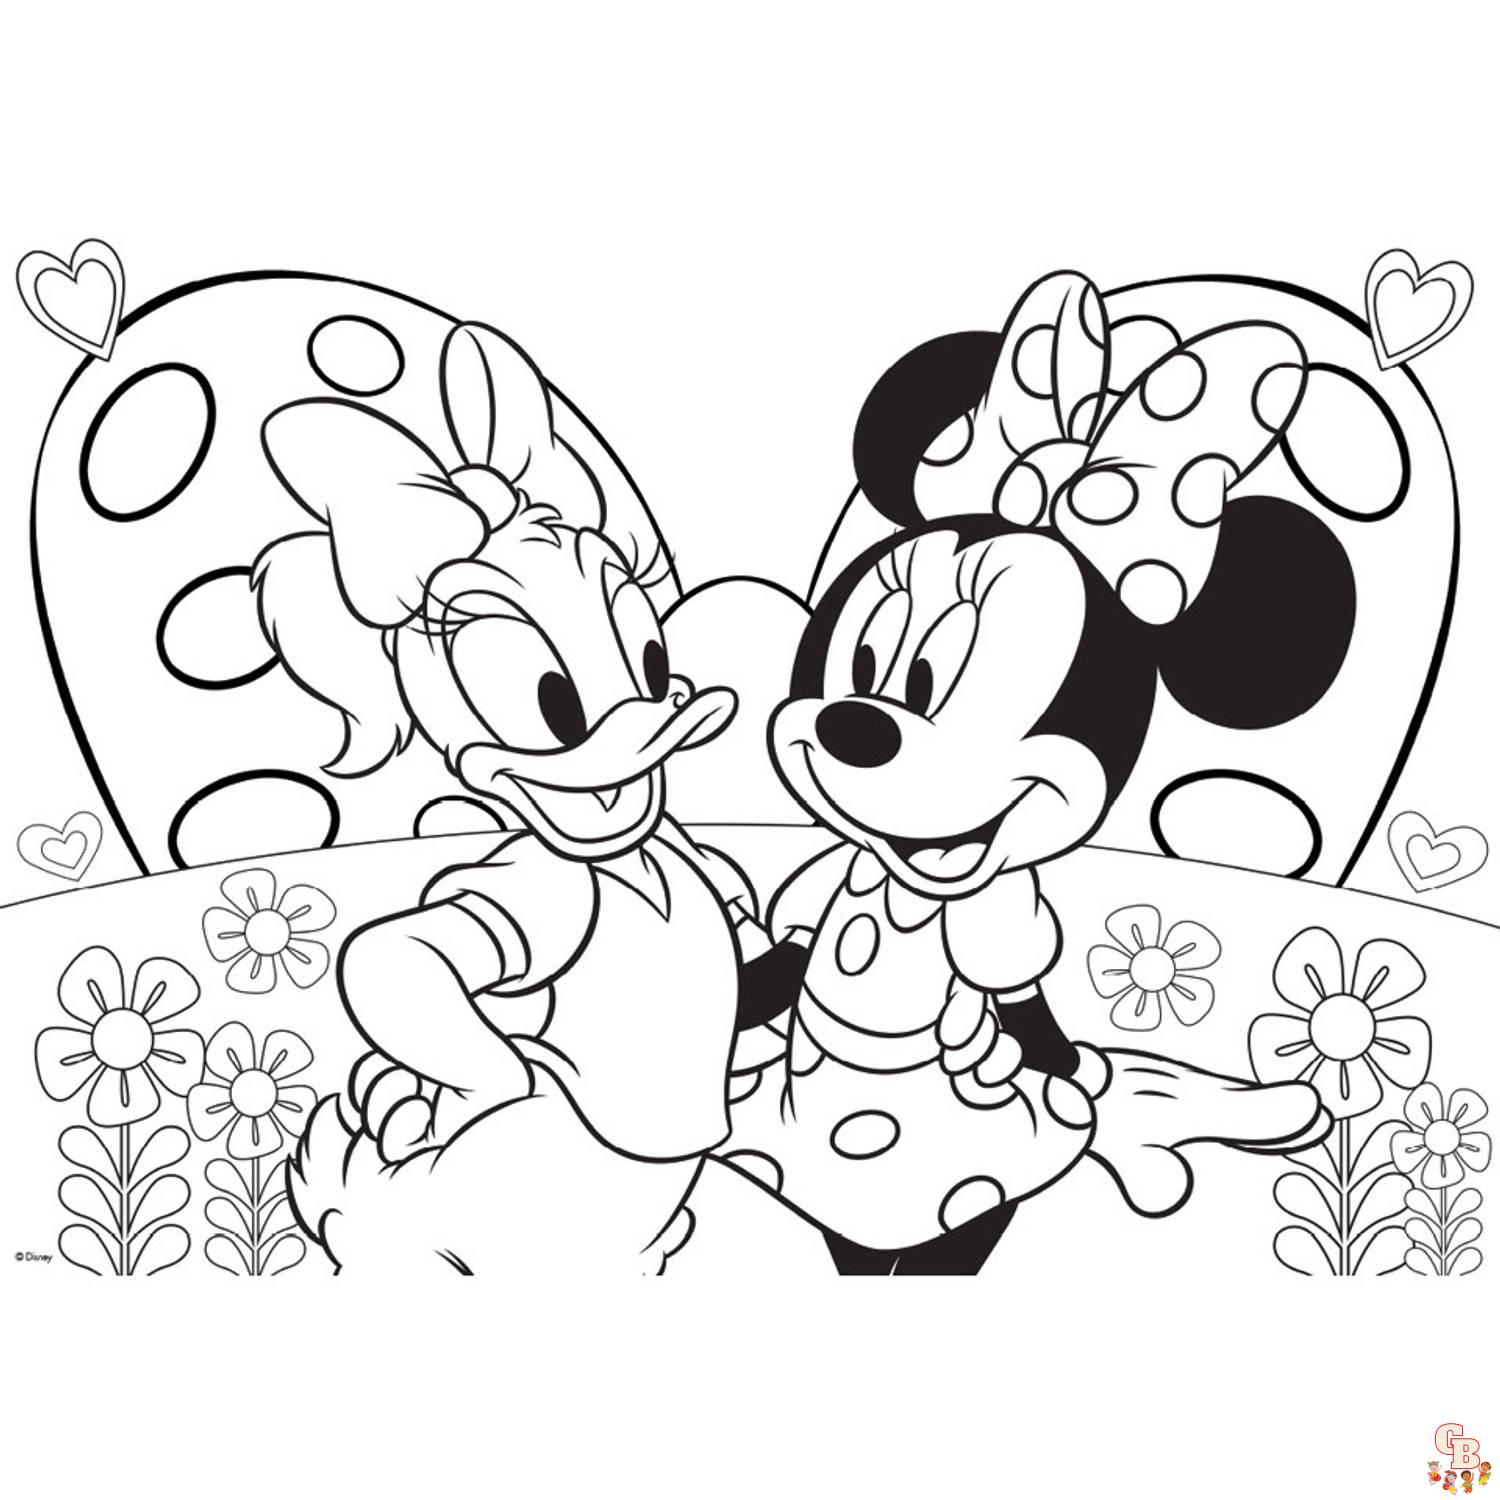 Gratis Minnie Mouse Kleurplaten voor Kinderen in Tiếng Hà Lan - Minnie Mouse Kleurplaat met Bloemenmotief en Meer